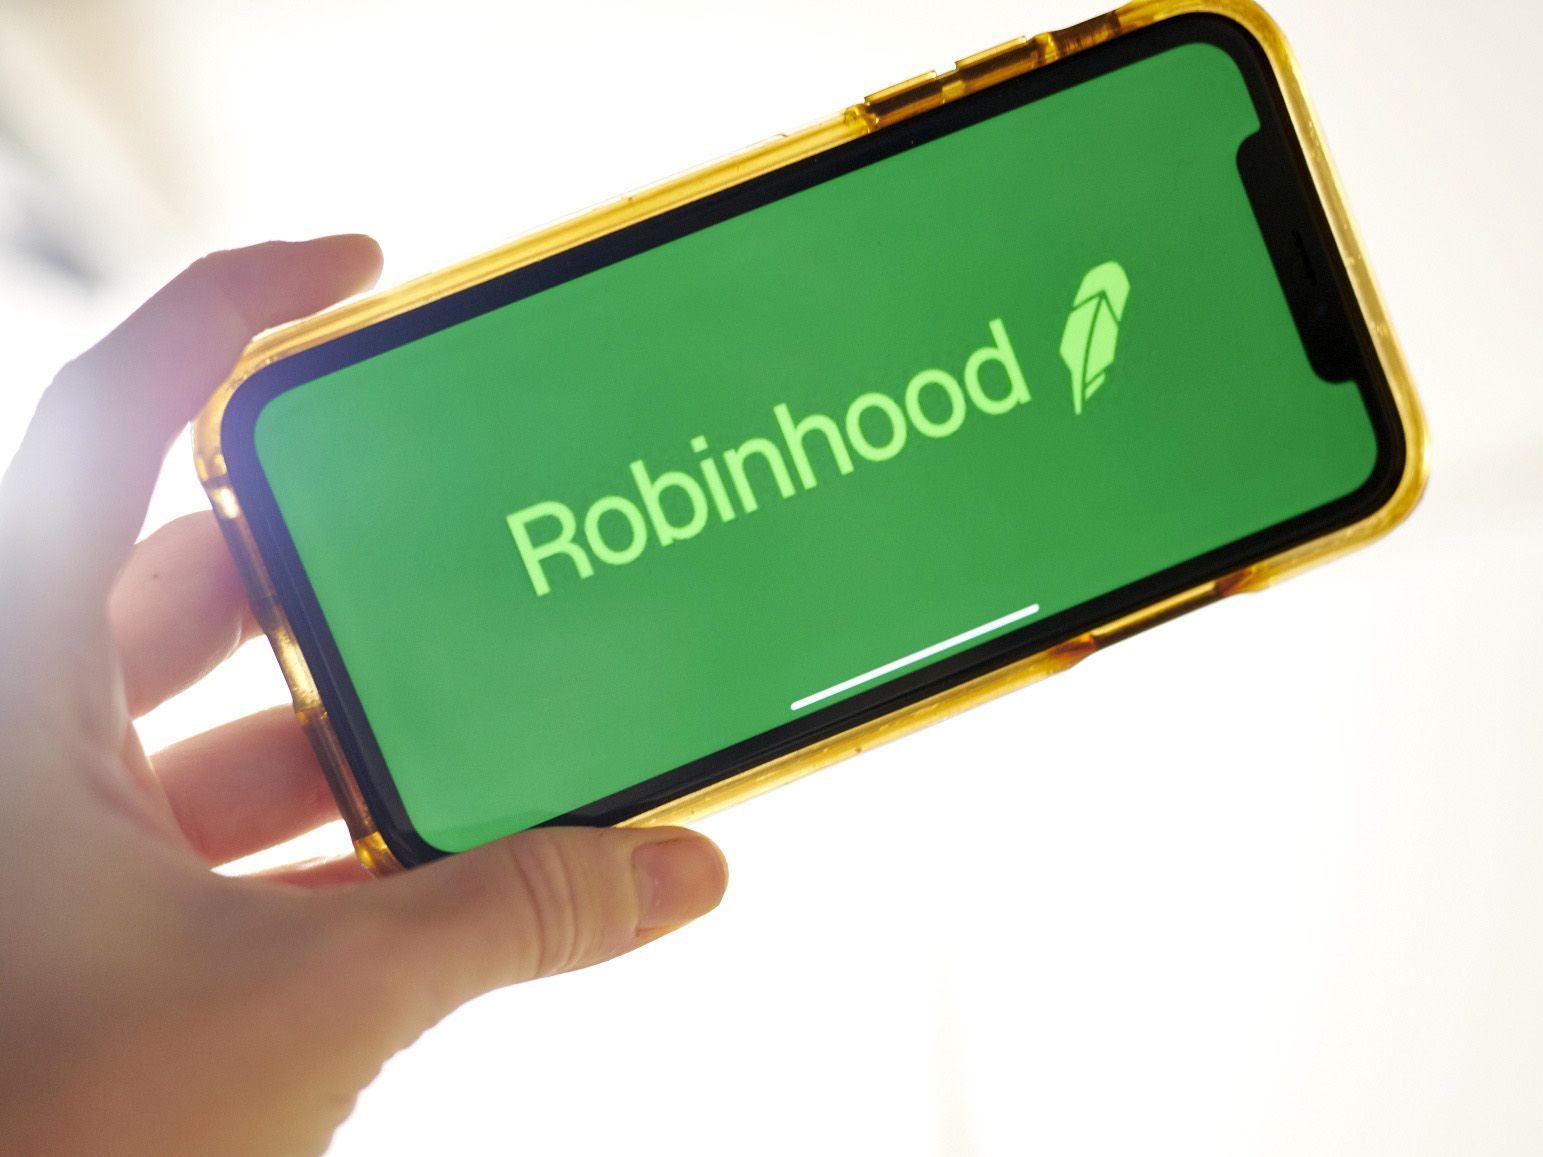 Robinhood y su modelo de inversión sin pago de comisiones revolucionó a Wall Street. Photographer: Gabby Jones/Bloomberg